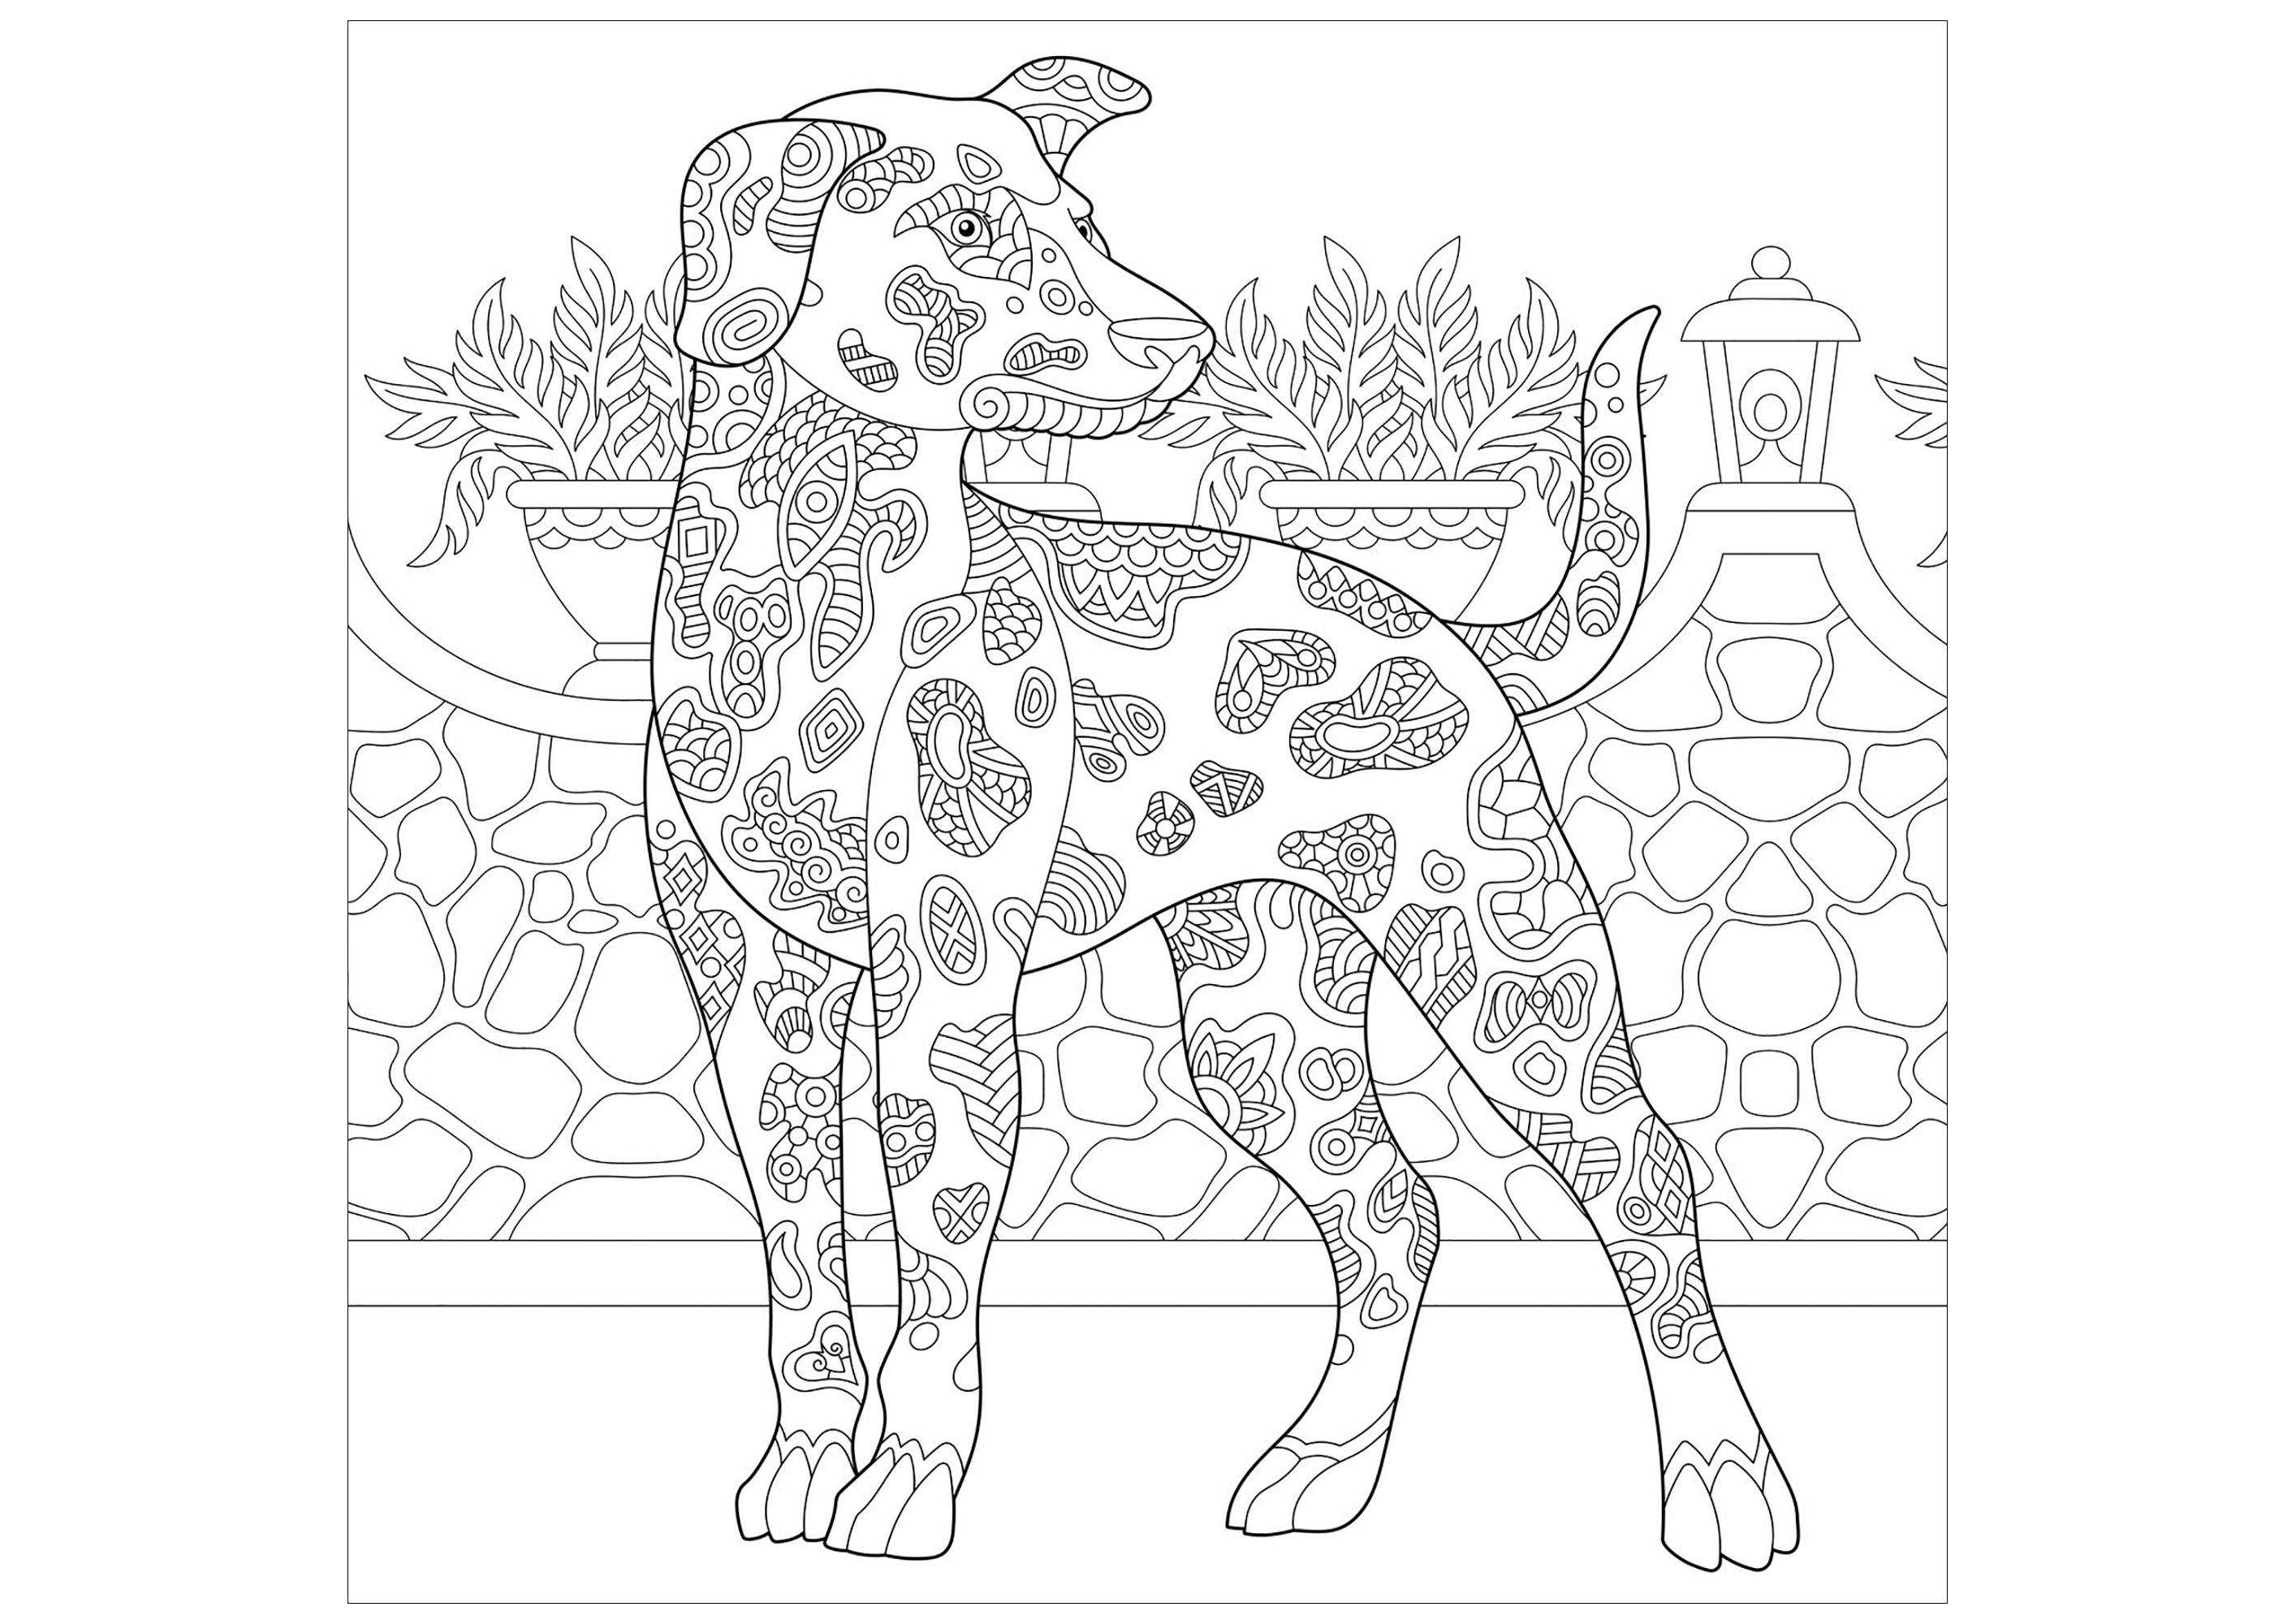 Um belo cão para colorir (Beauceron), Artista : Sybirko   Fonte : 123rf